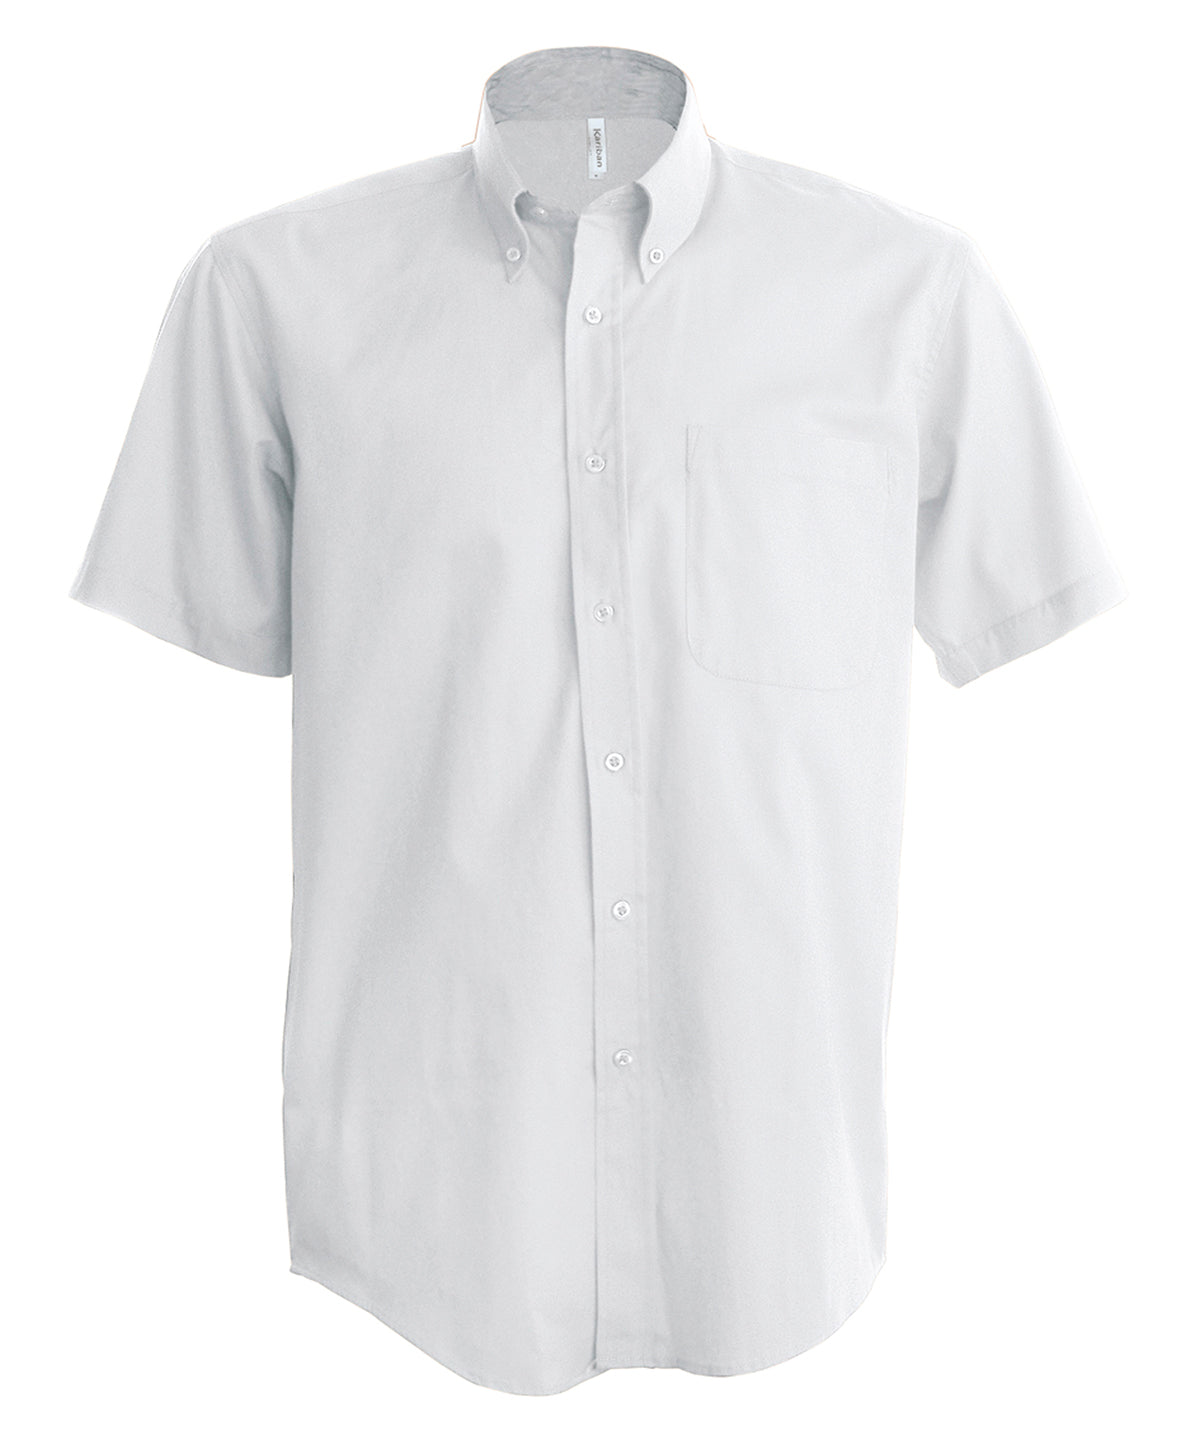 Bolir - Men's Short-sleeved Oxford Shirt